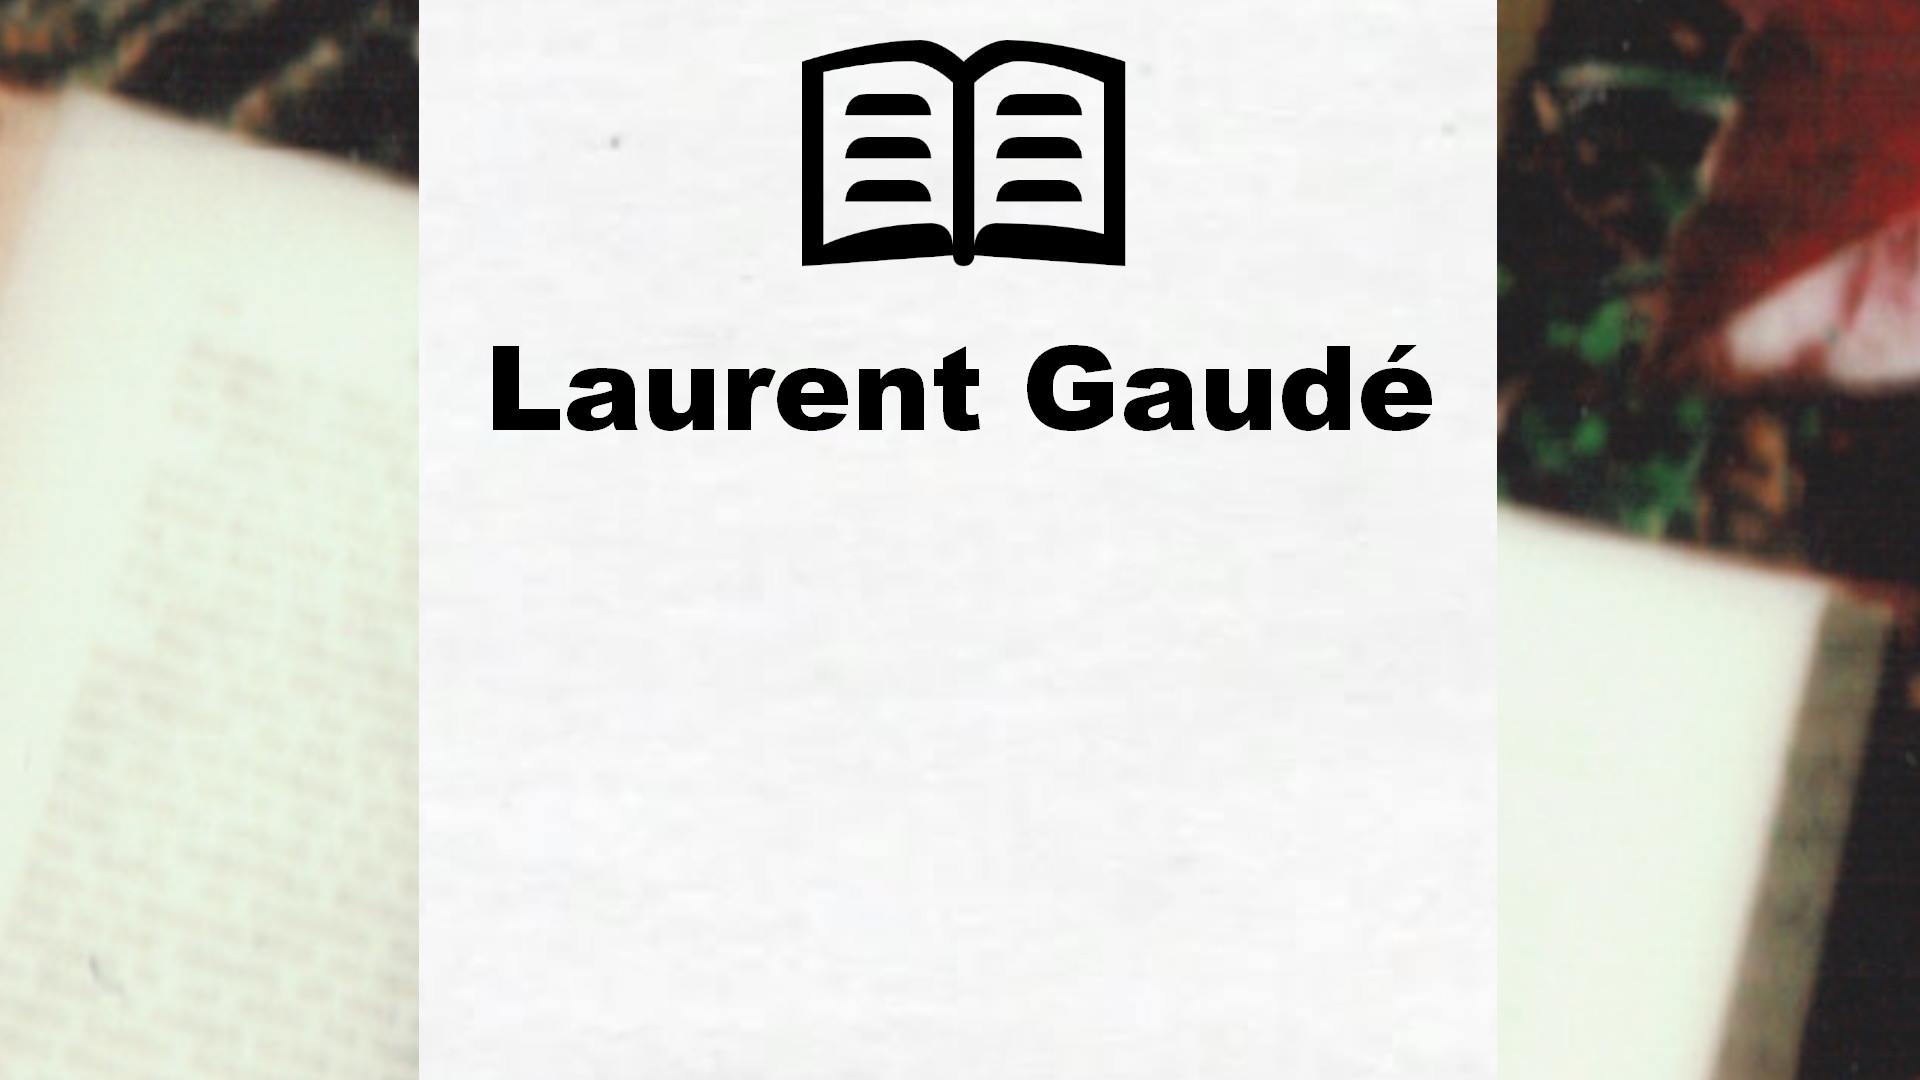 Livres de Laurent Gaudé